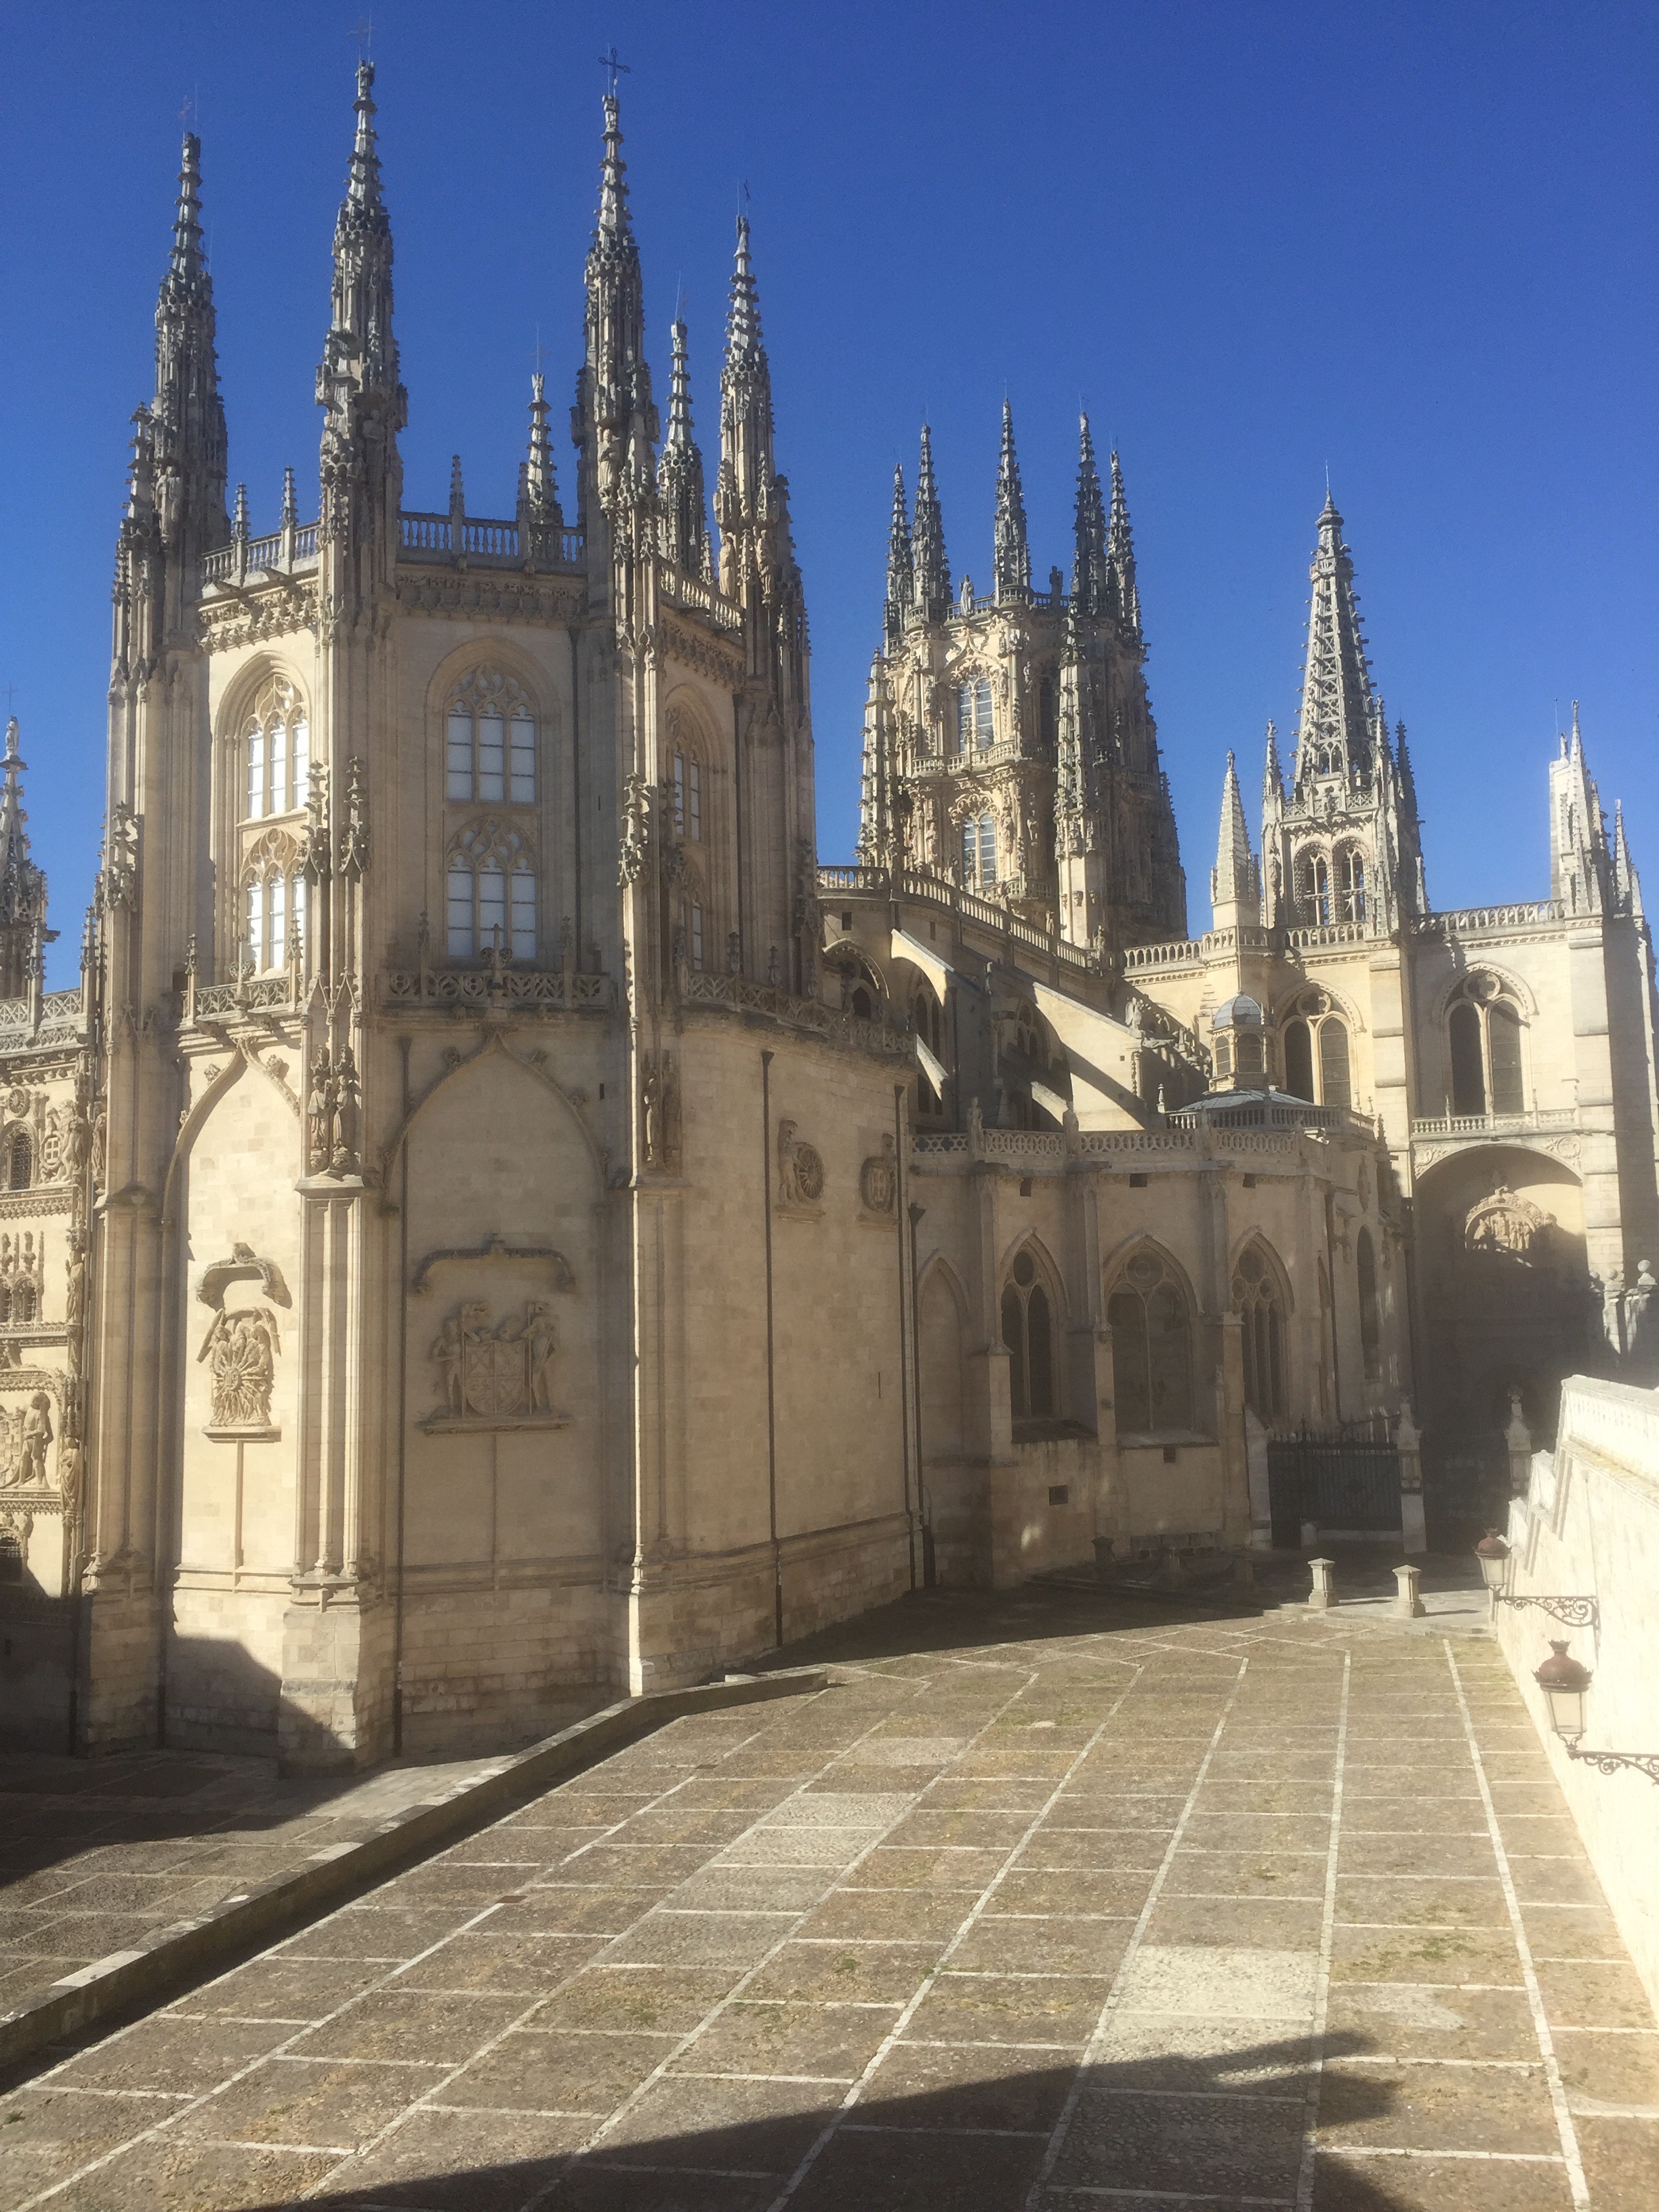 Camino Day 10 – Burgos